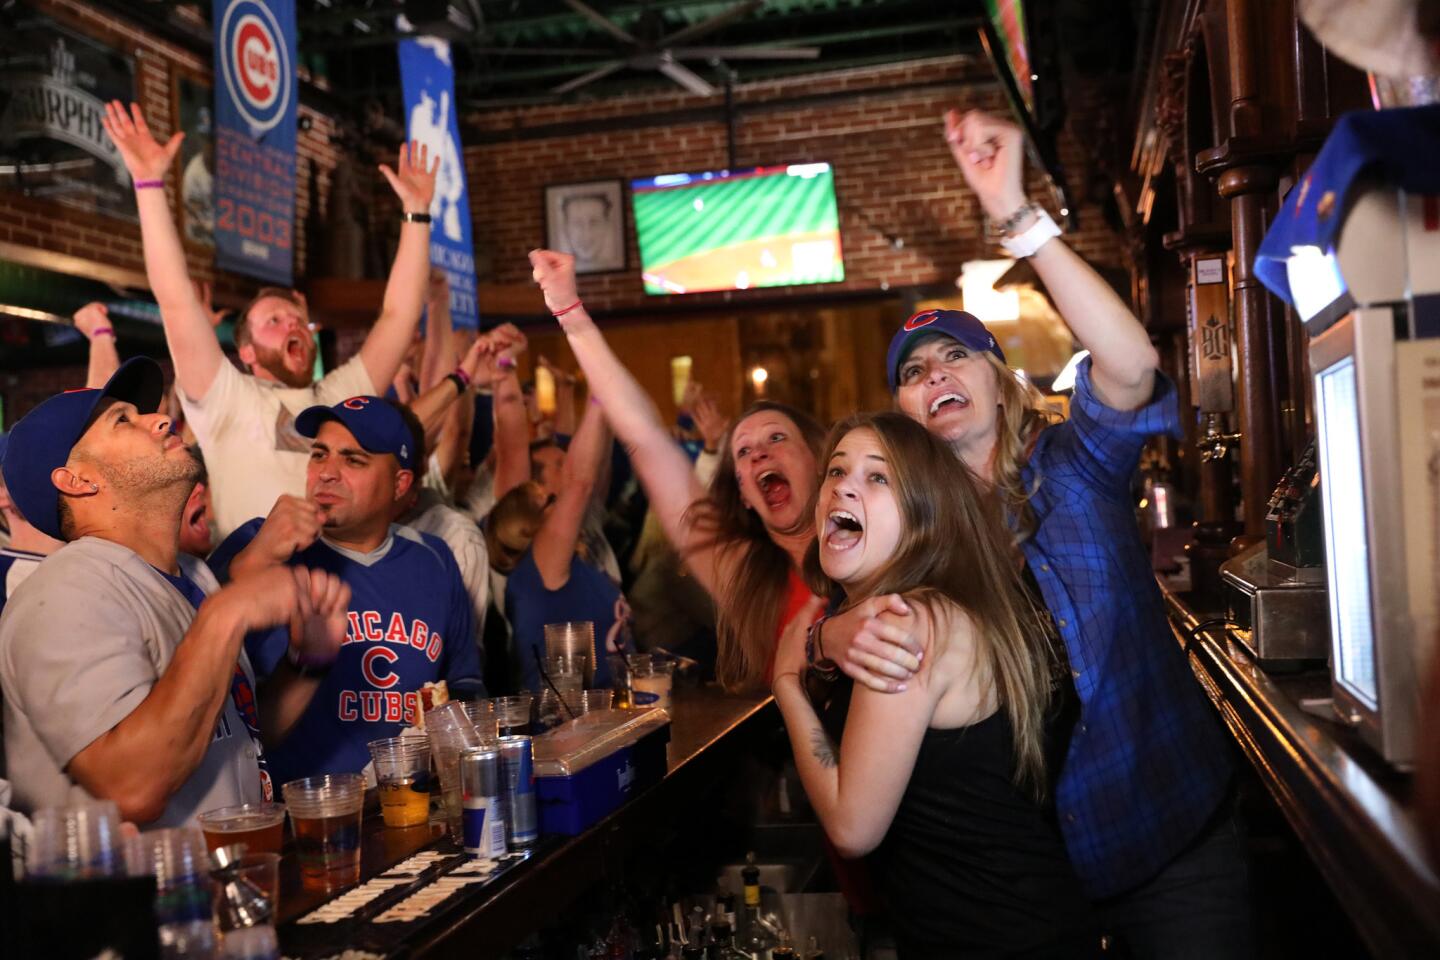 Cubs fans celebrate